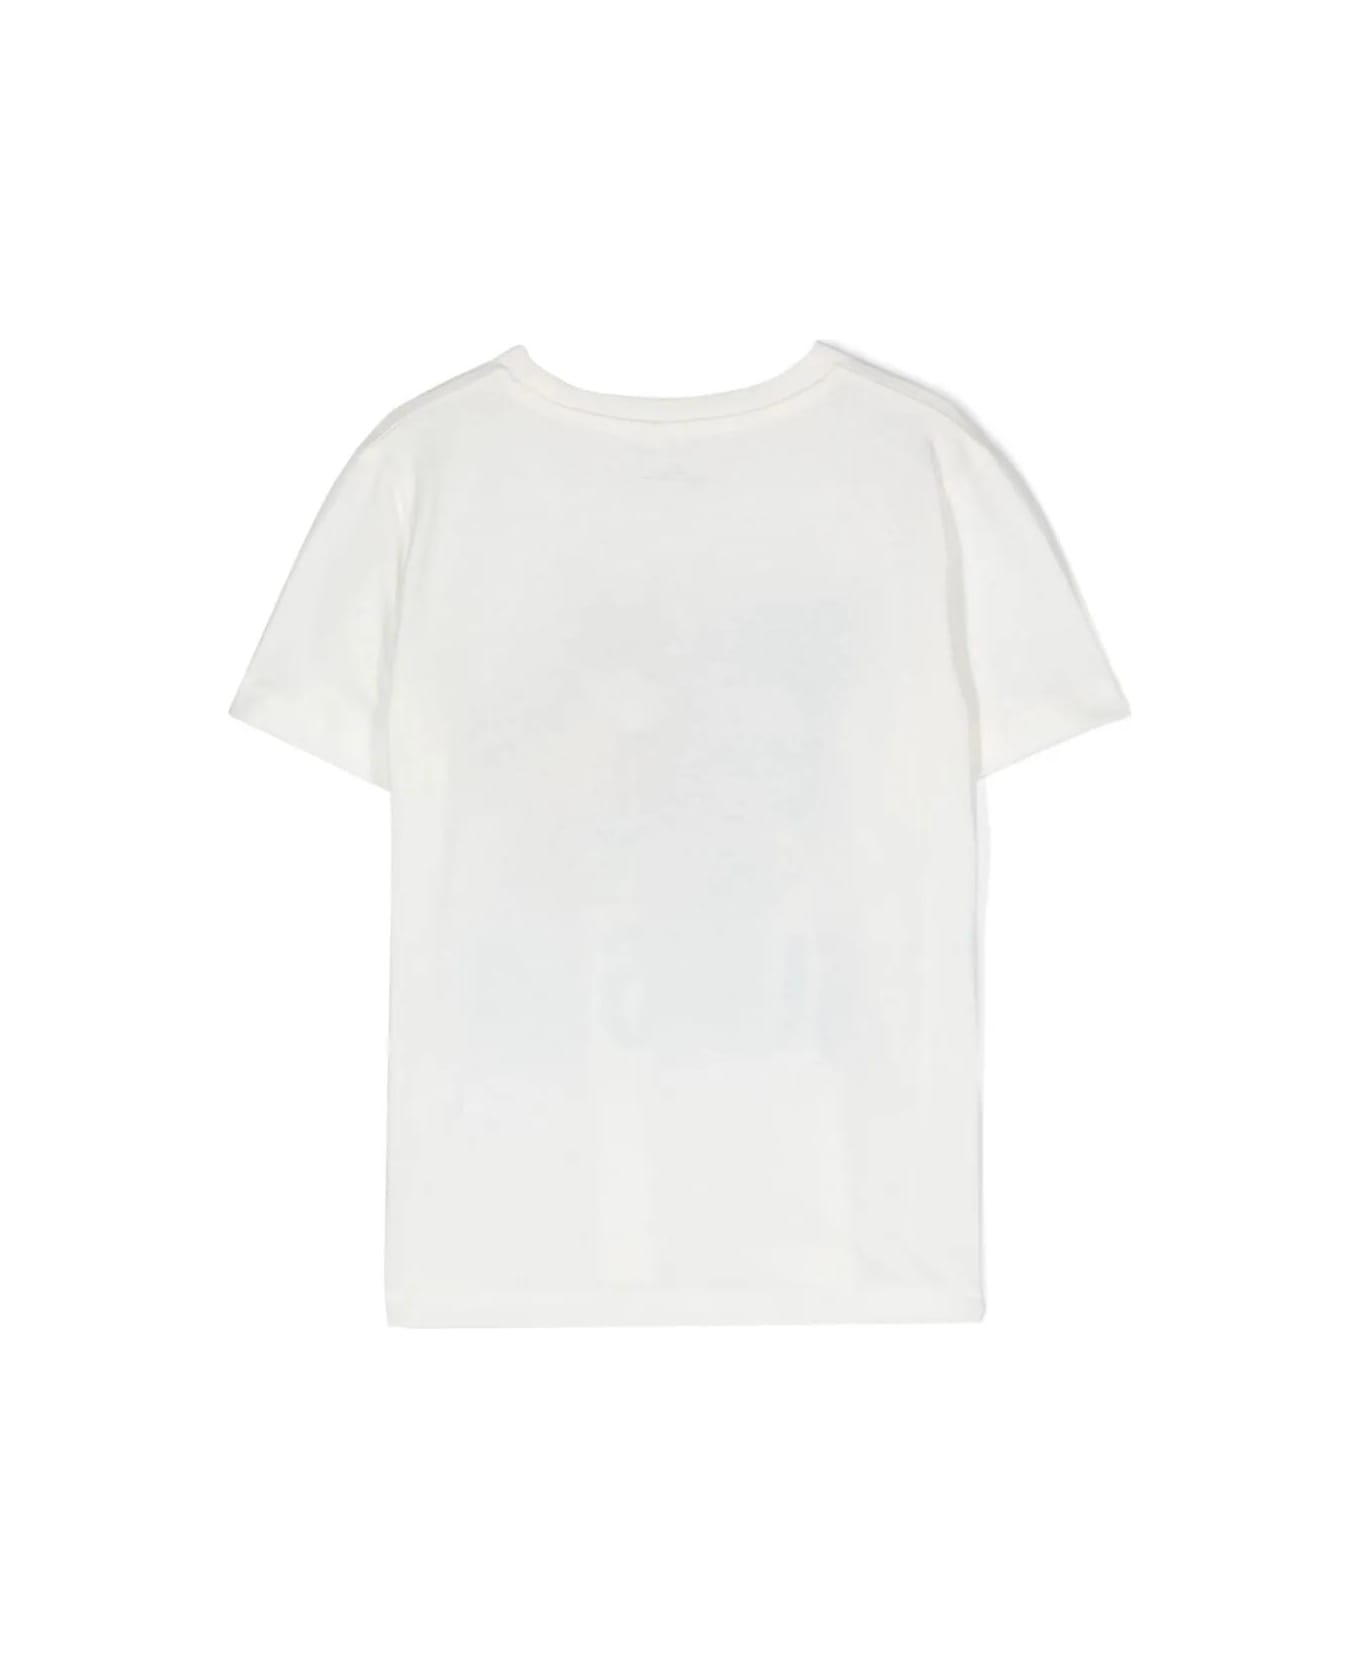 Stella McCartney Kids T-shirt - Ivory